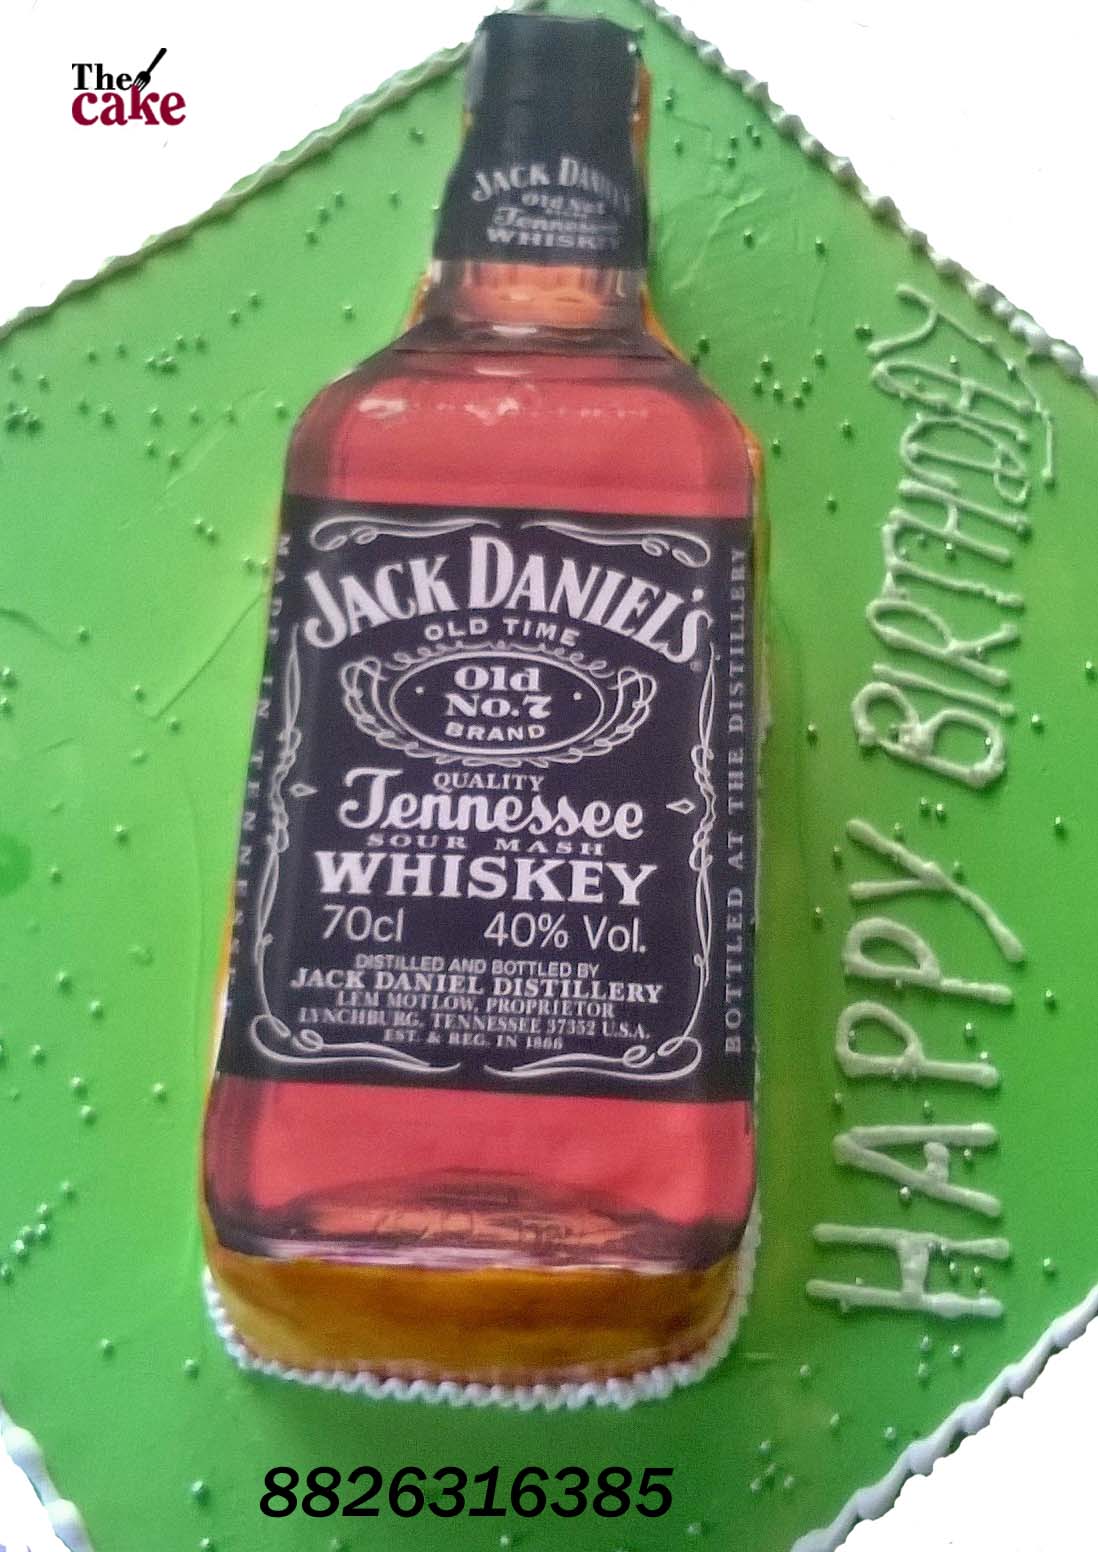 Jack Daniel's Bottle Cake - White Lights on Wednesday